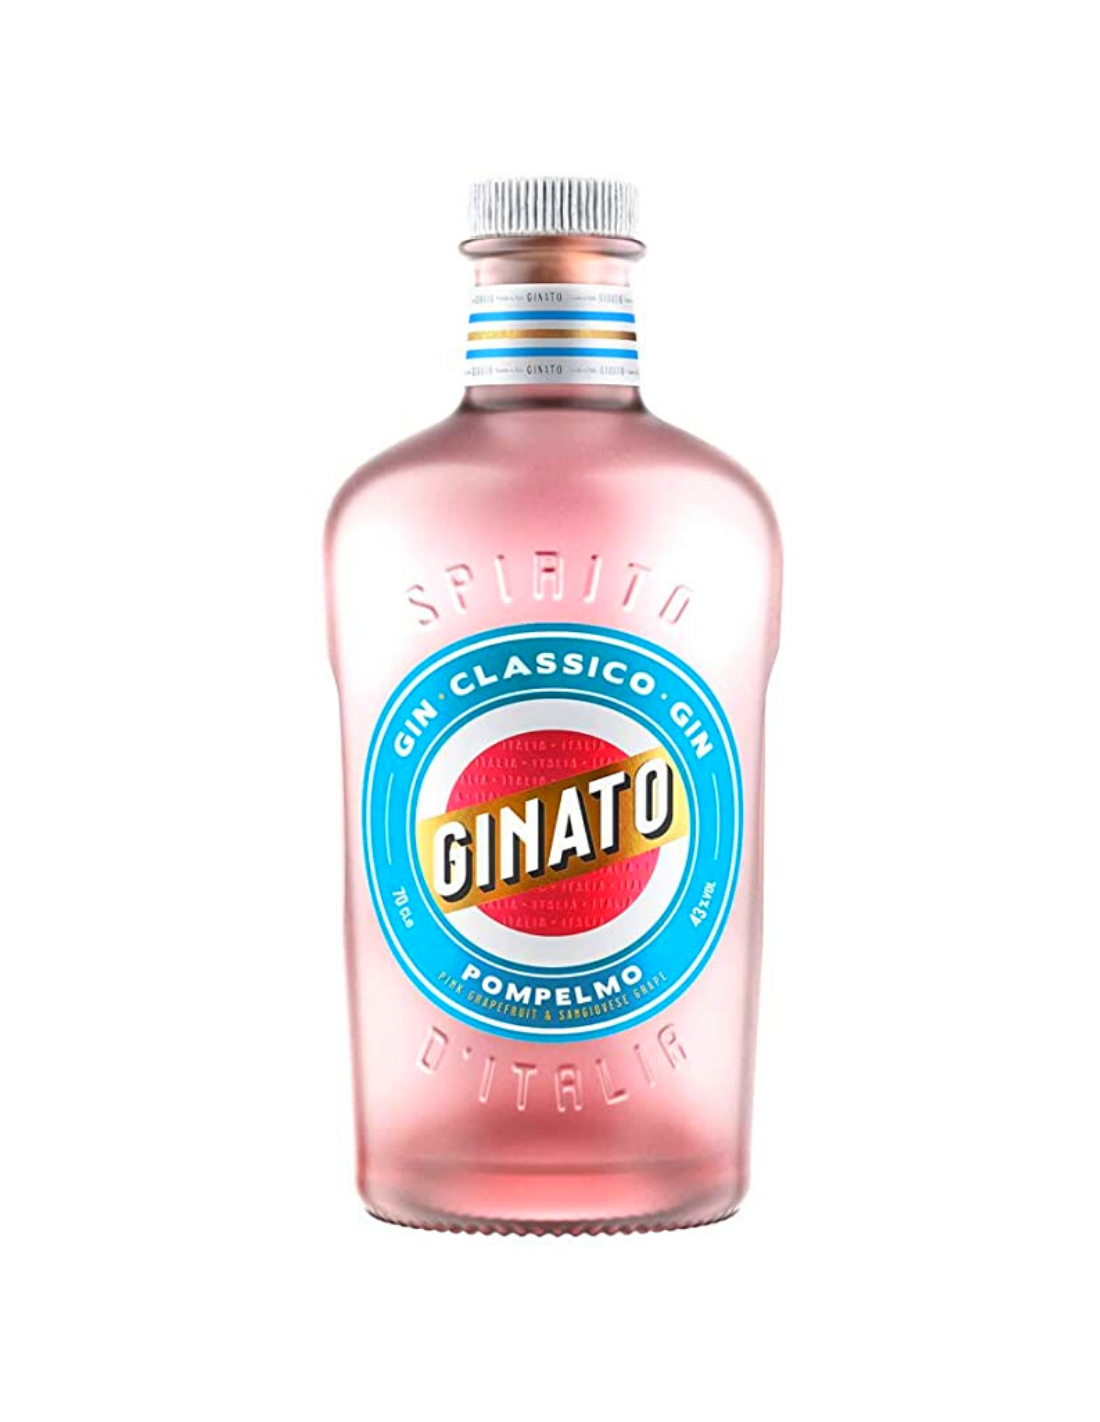 Gin Ginato Pompelmo Pink Grapefruit & Sangiovese Grape, 43% alc., 0.7L, Italia alcooldiscount.ro